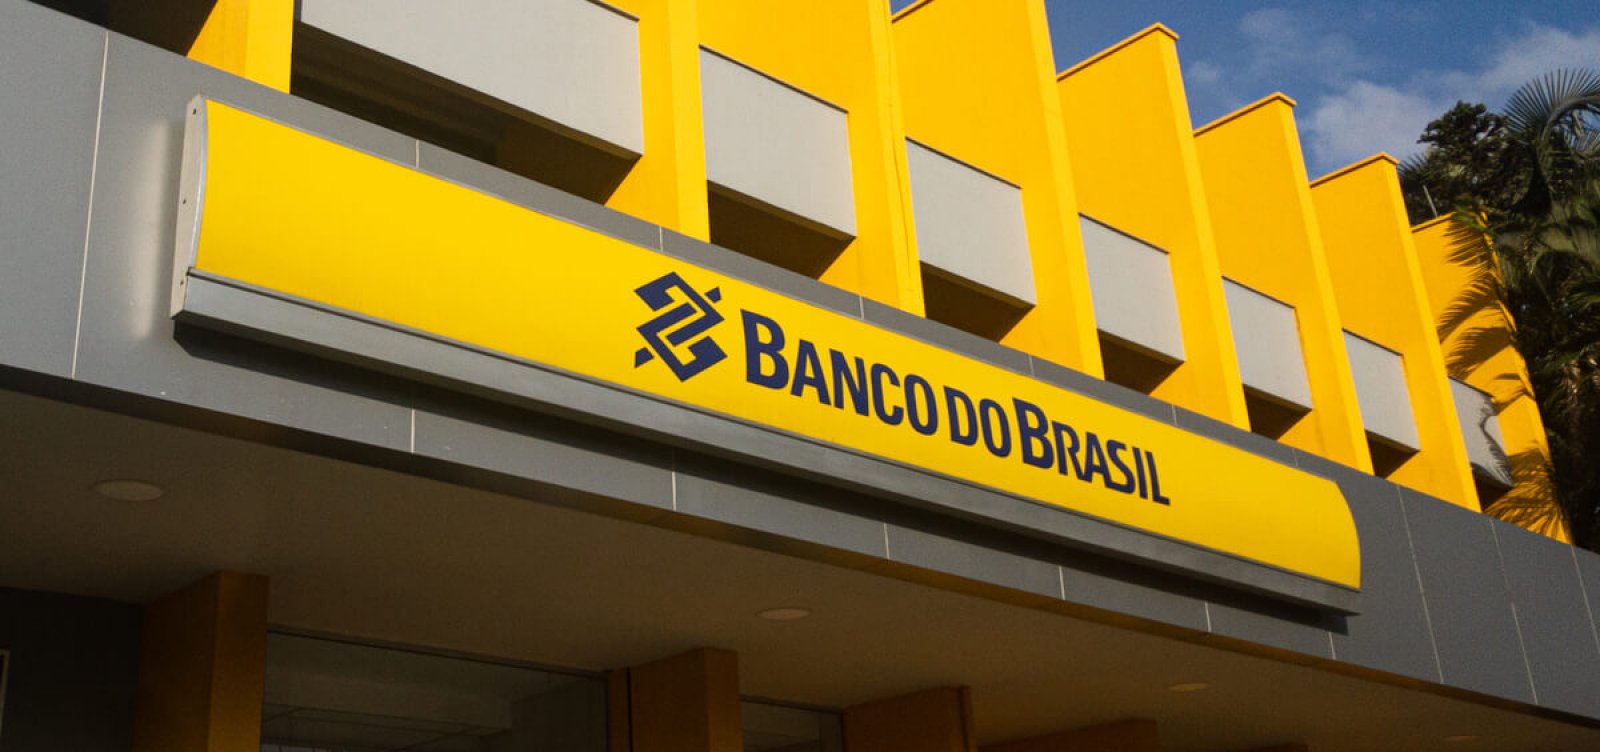 Fachada do prédio do Banco do Brasil, nas cores amarelo com escritas em azul